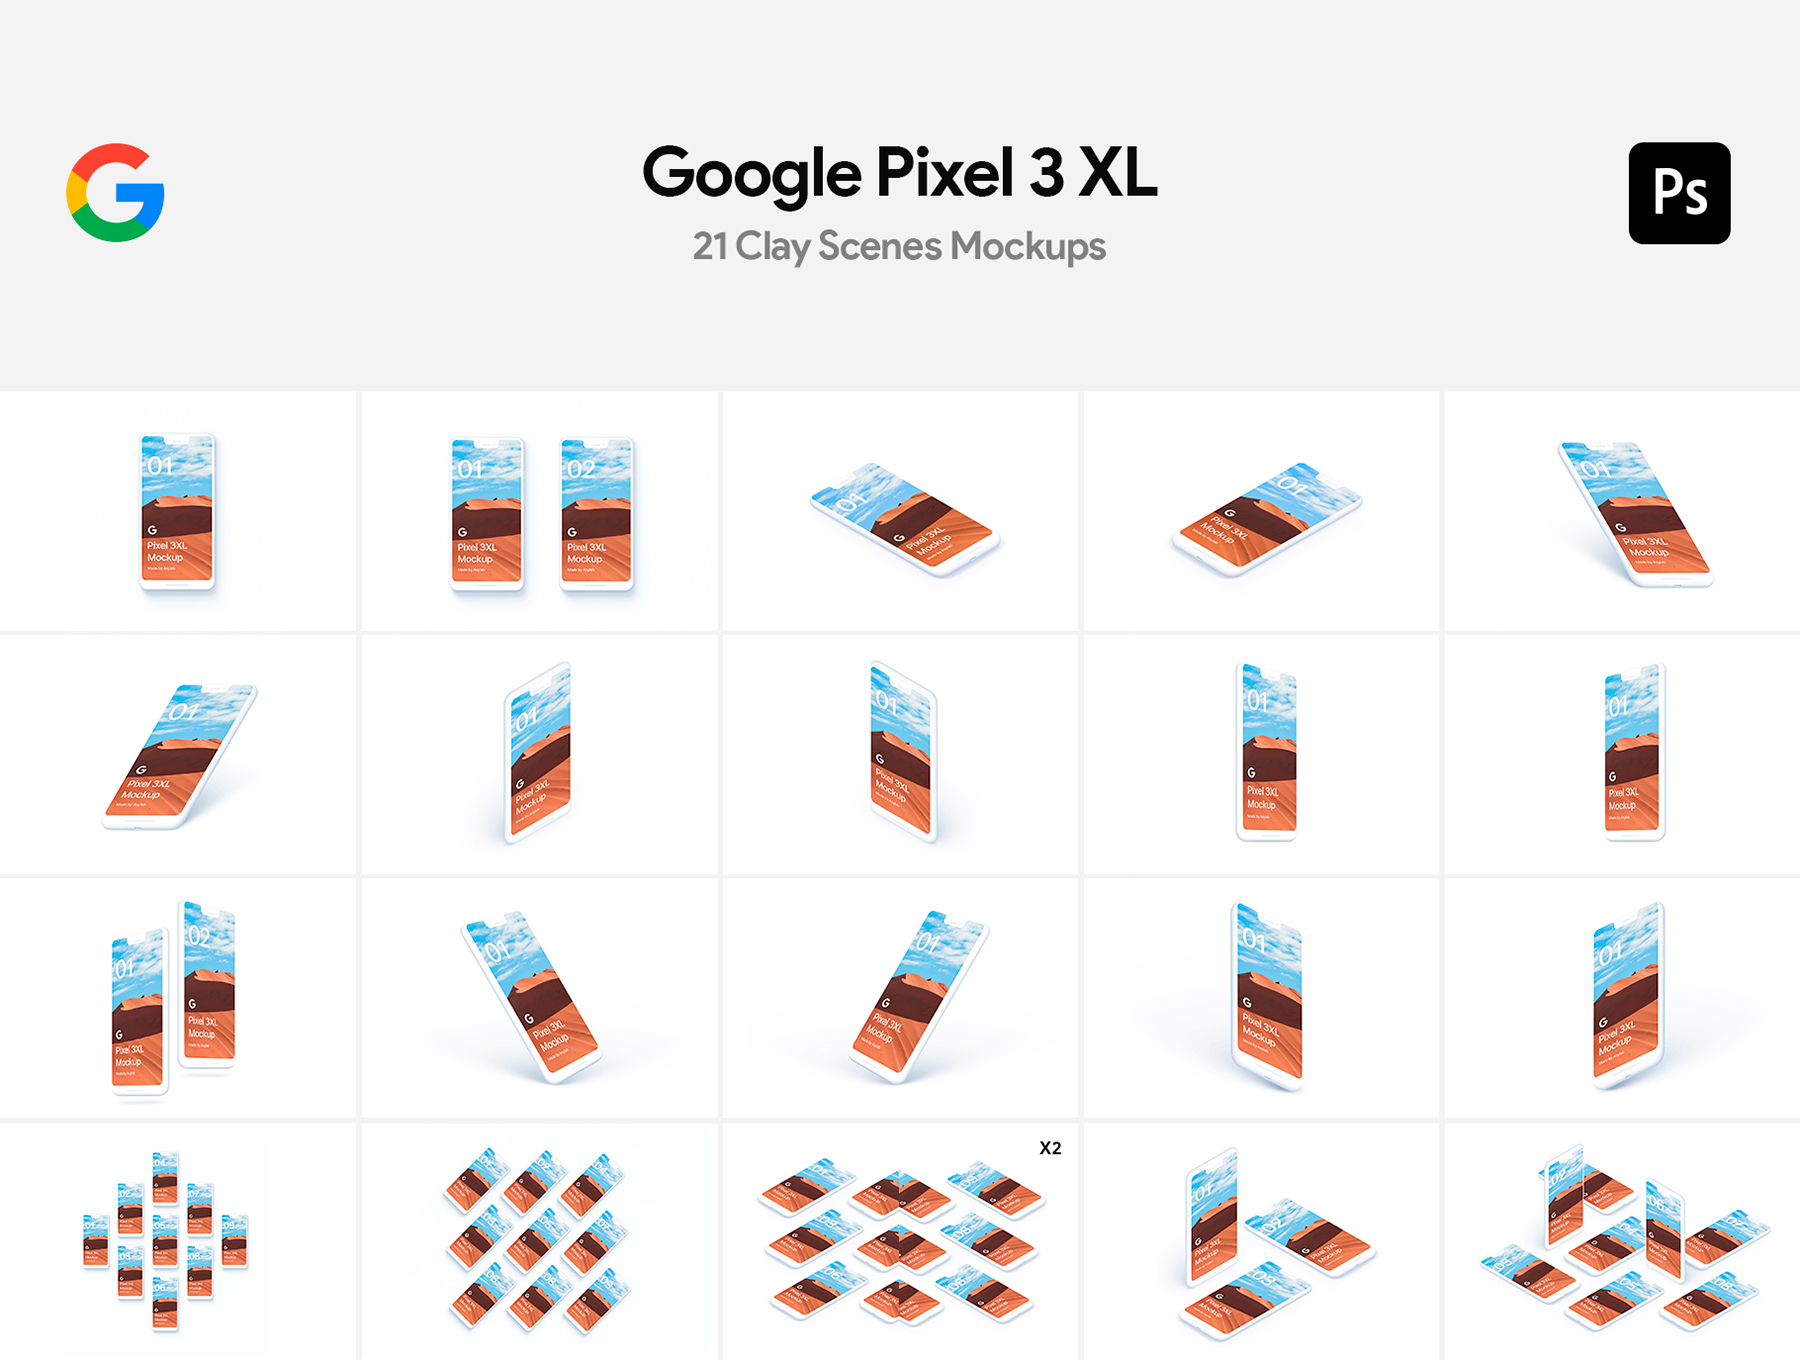 谷歌像素3 XL粘土模型 Google Pixel 3 XL